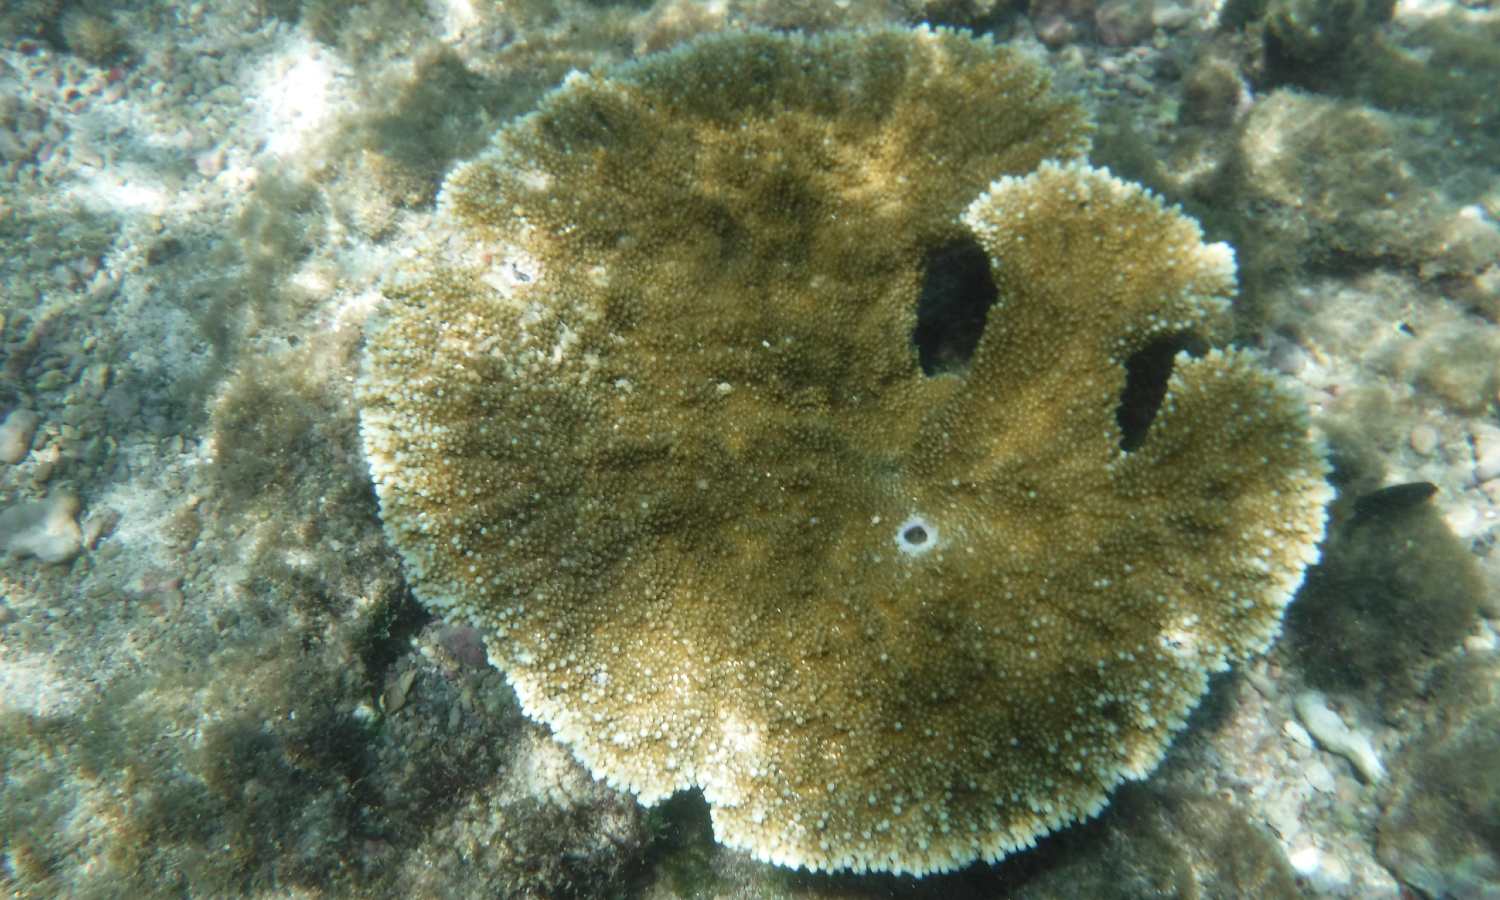 Vista de coral en el fondo del mar